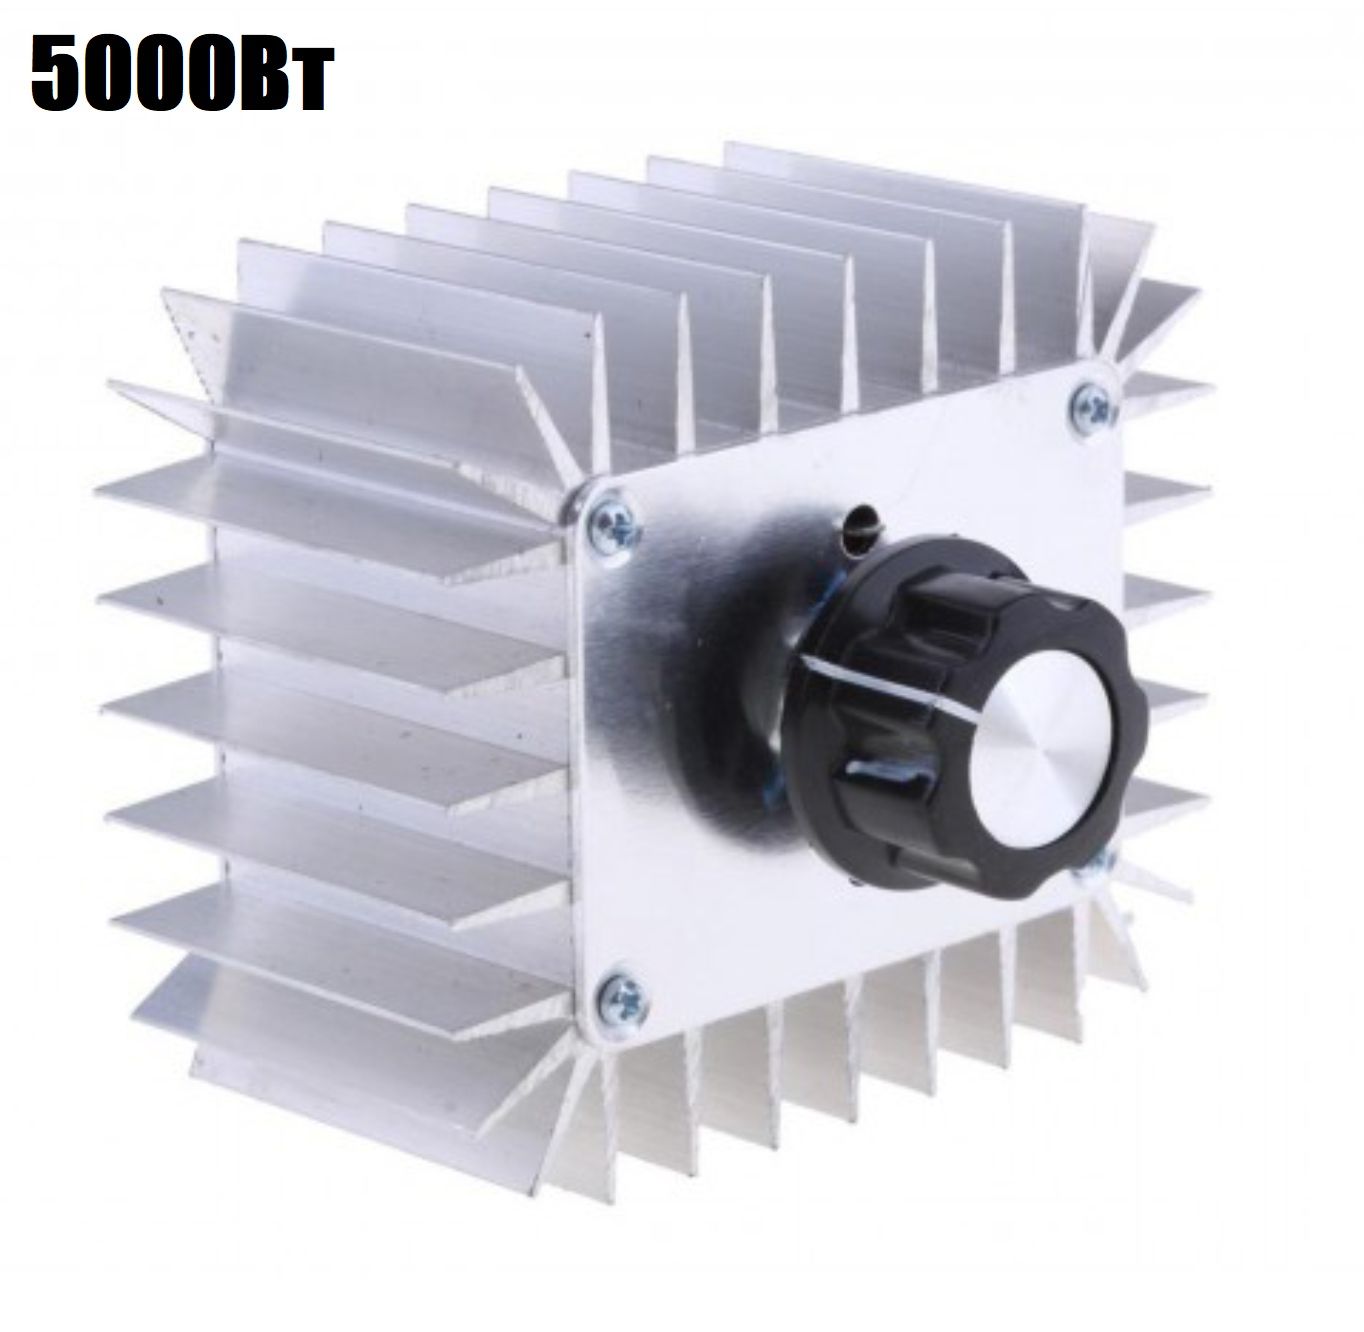 Симисторный 9V регулятор переменного напряжения, температуры, света, скорости 5000Вт (У) переносной электронный стабилизатор напряжения tdm